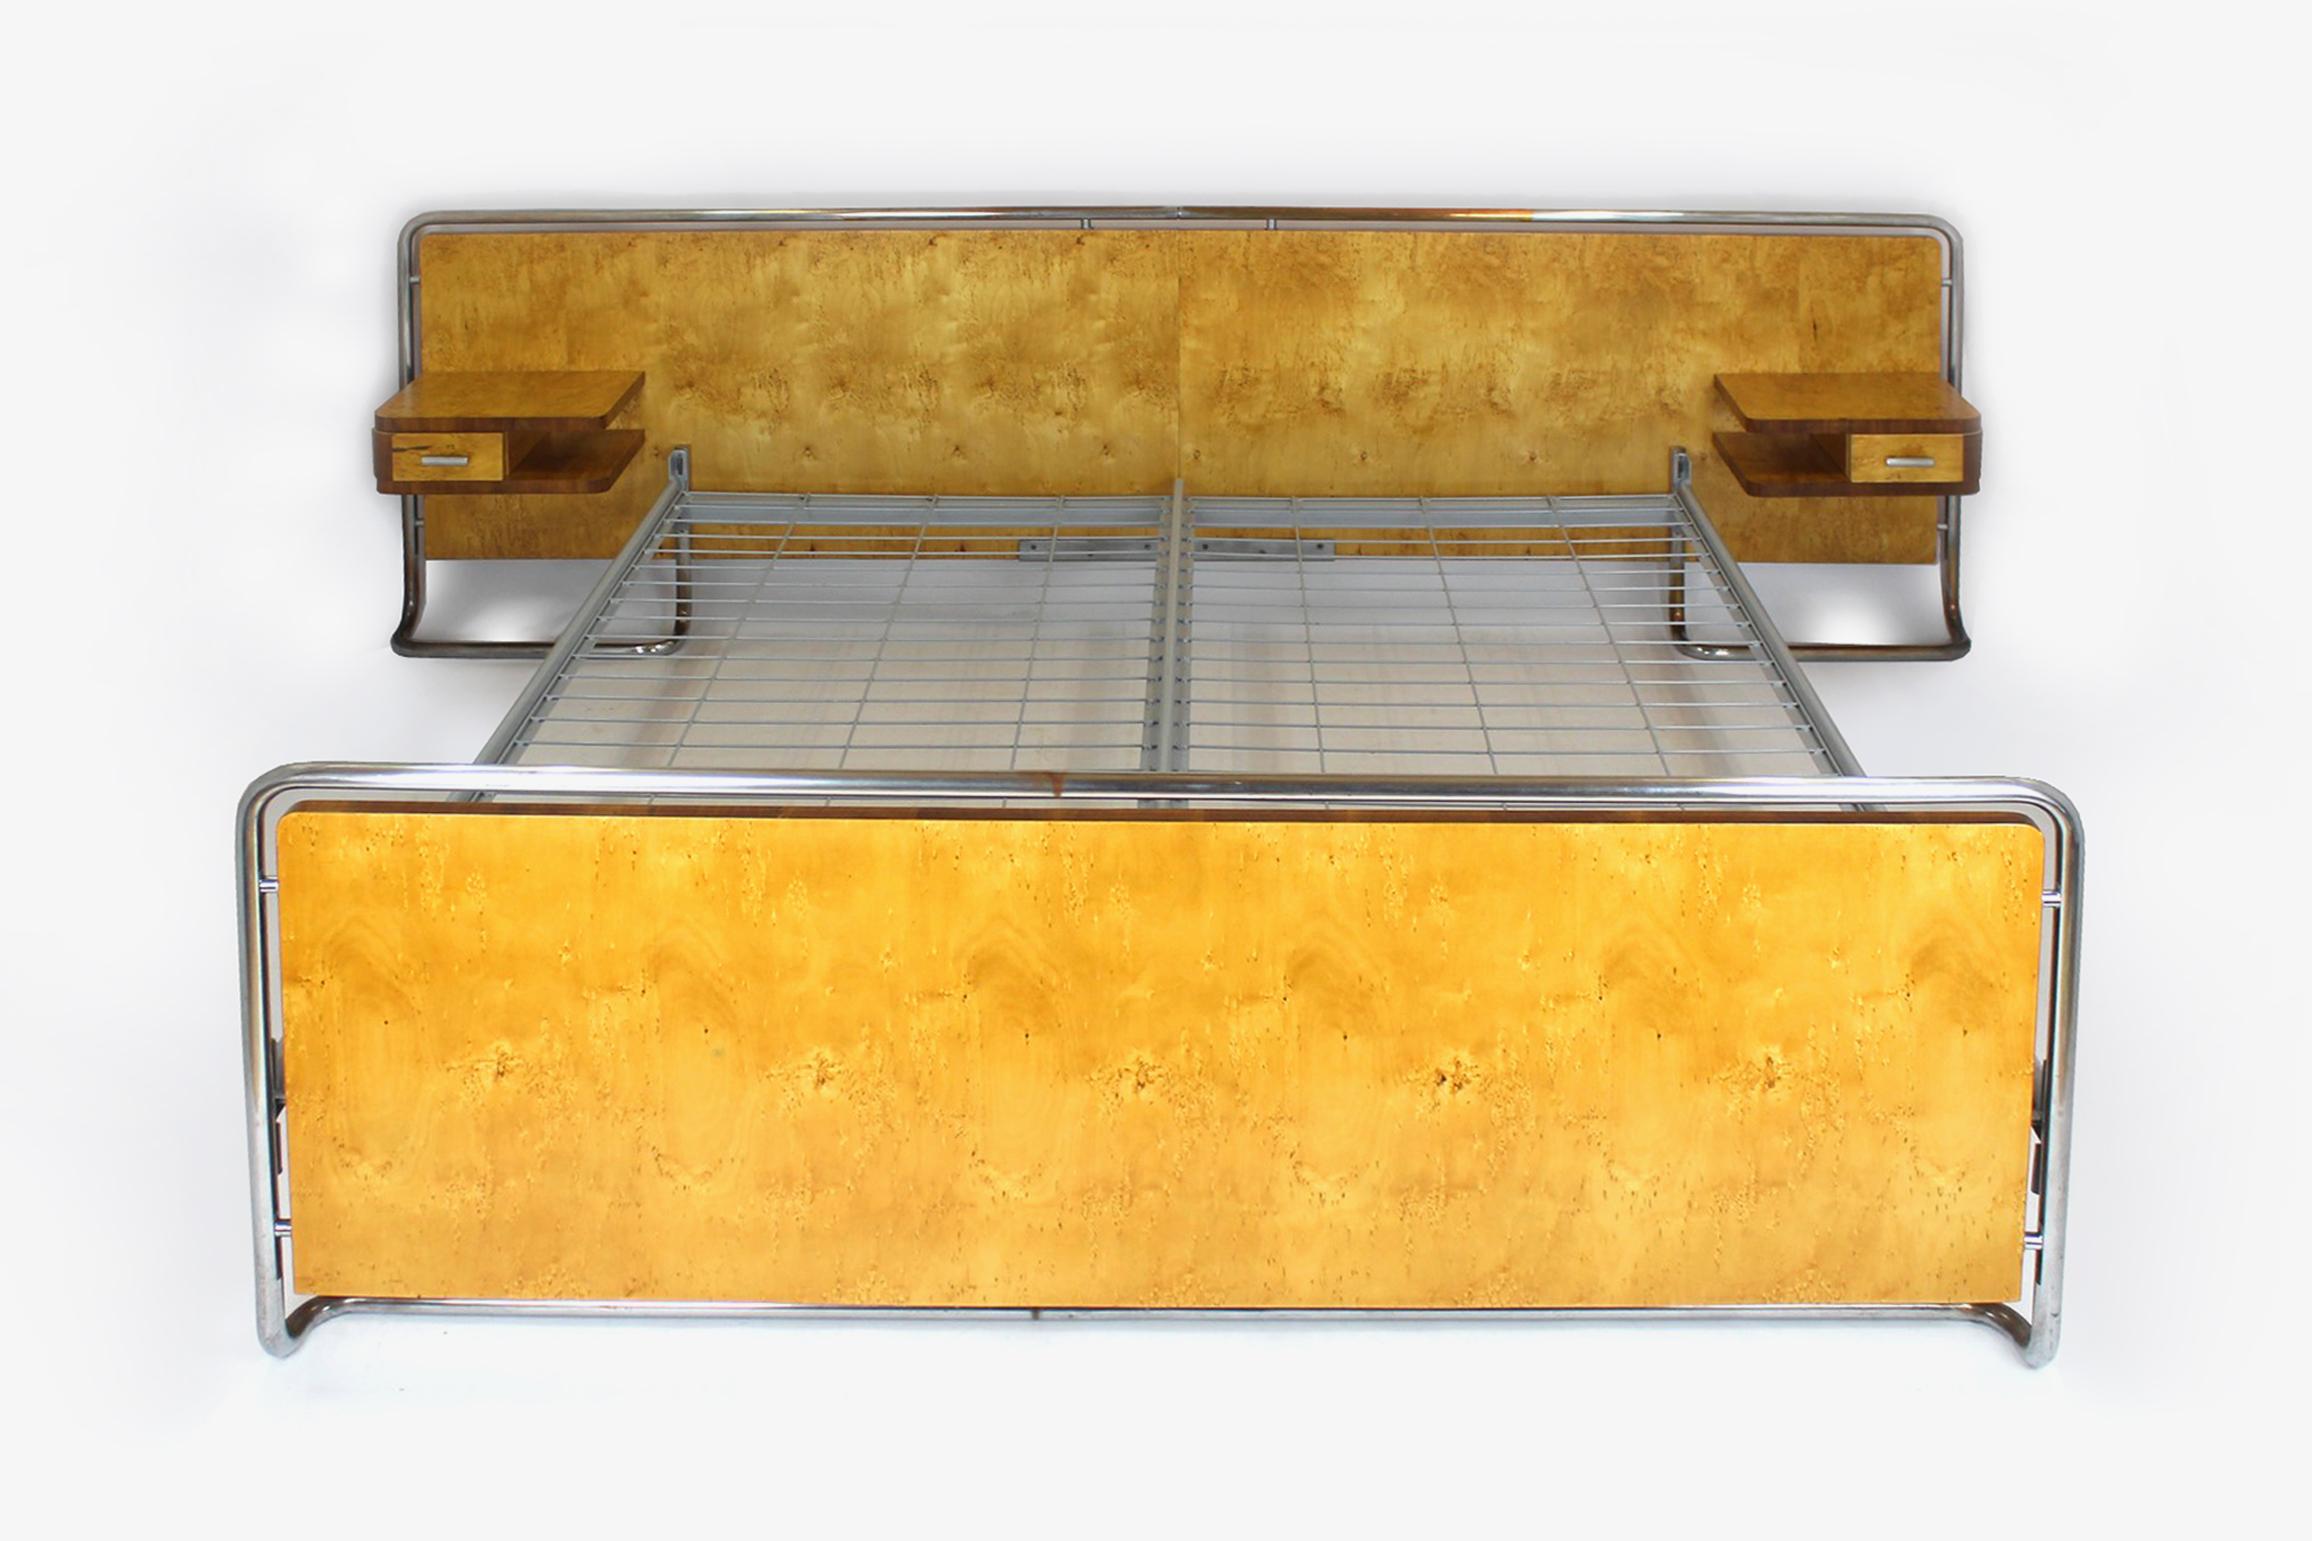 
Ce lit de style Bauhaus a été fabriqué par Rudolf Vichr dans les années 1940 en Tchécoslovaquie.
L'ensemble se compose d'un lit double et de deux tables de chevet suspendues. Le meuble est plaqué de deux types de bois, le cadre est en acier